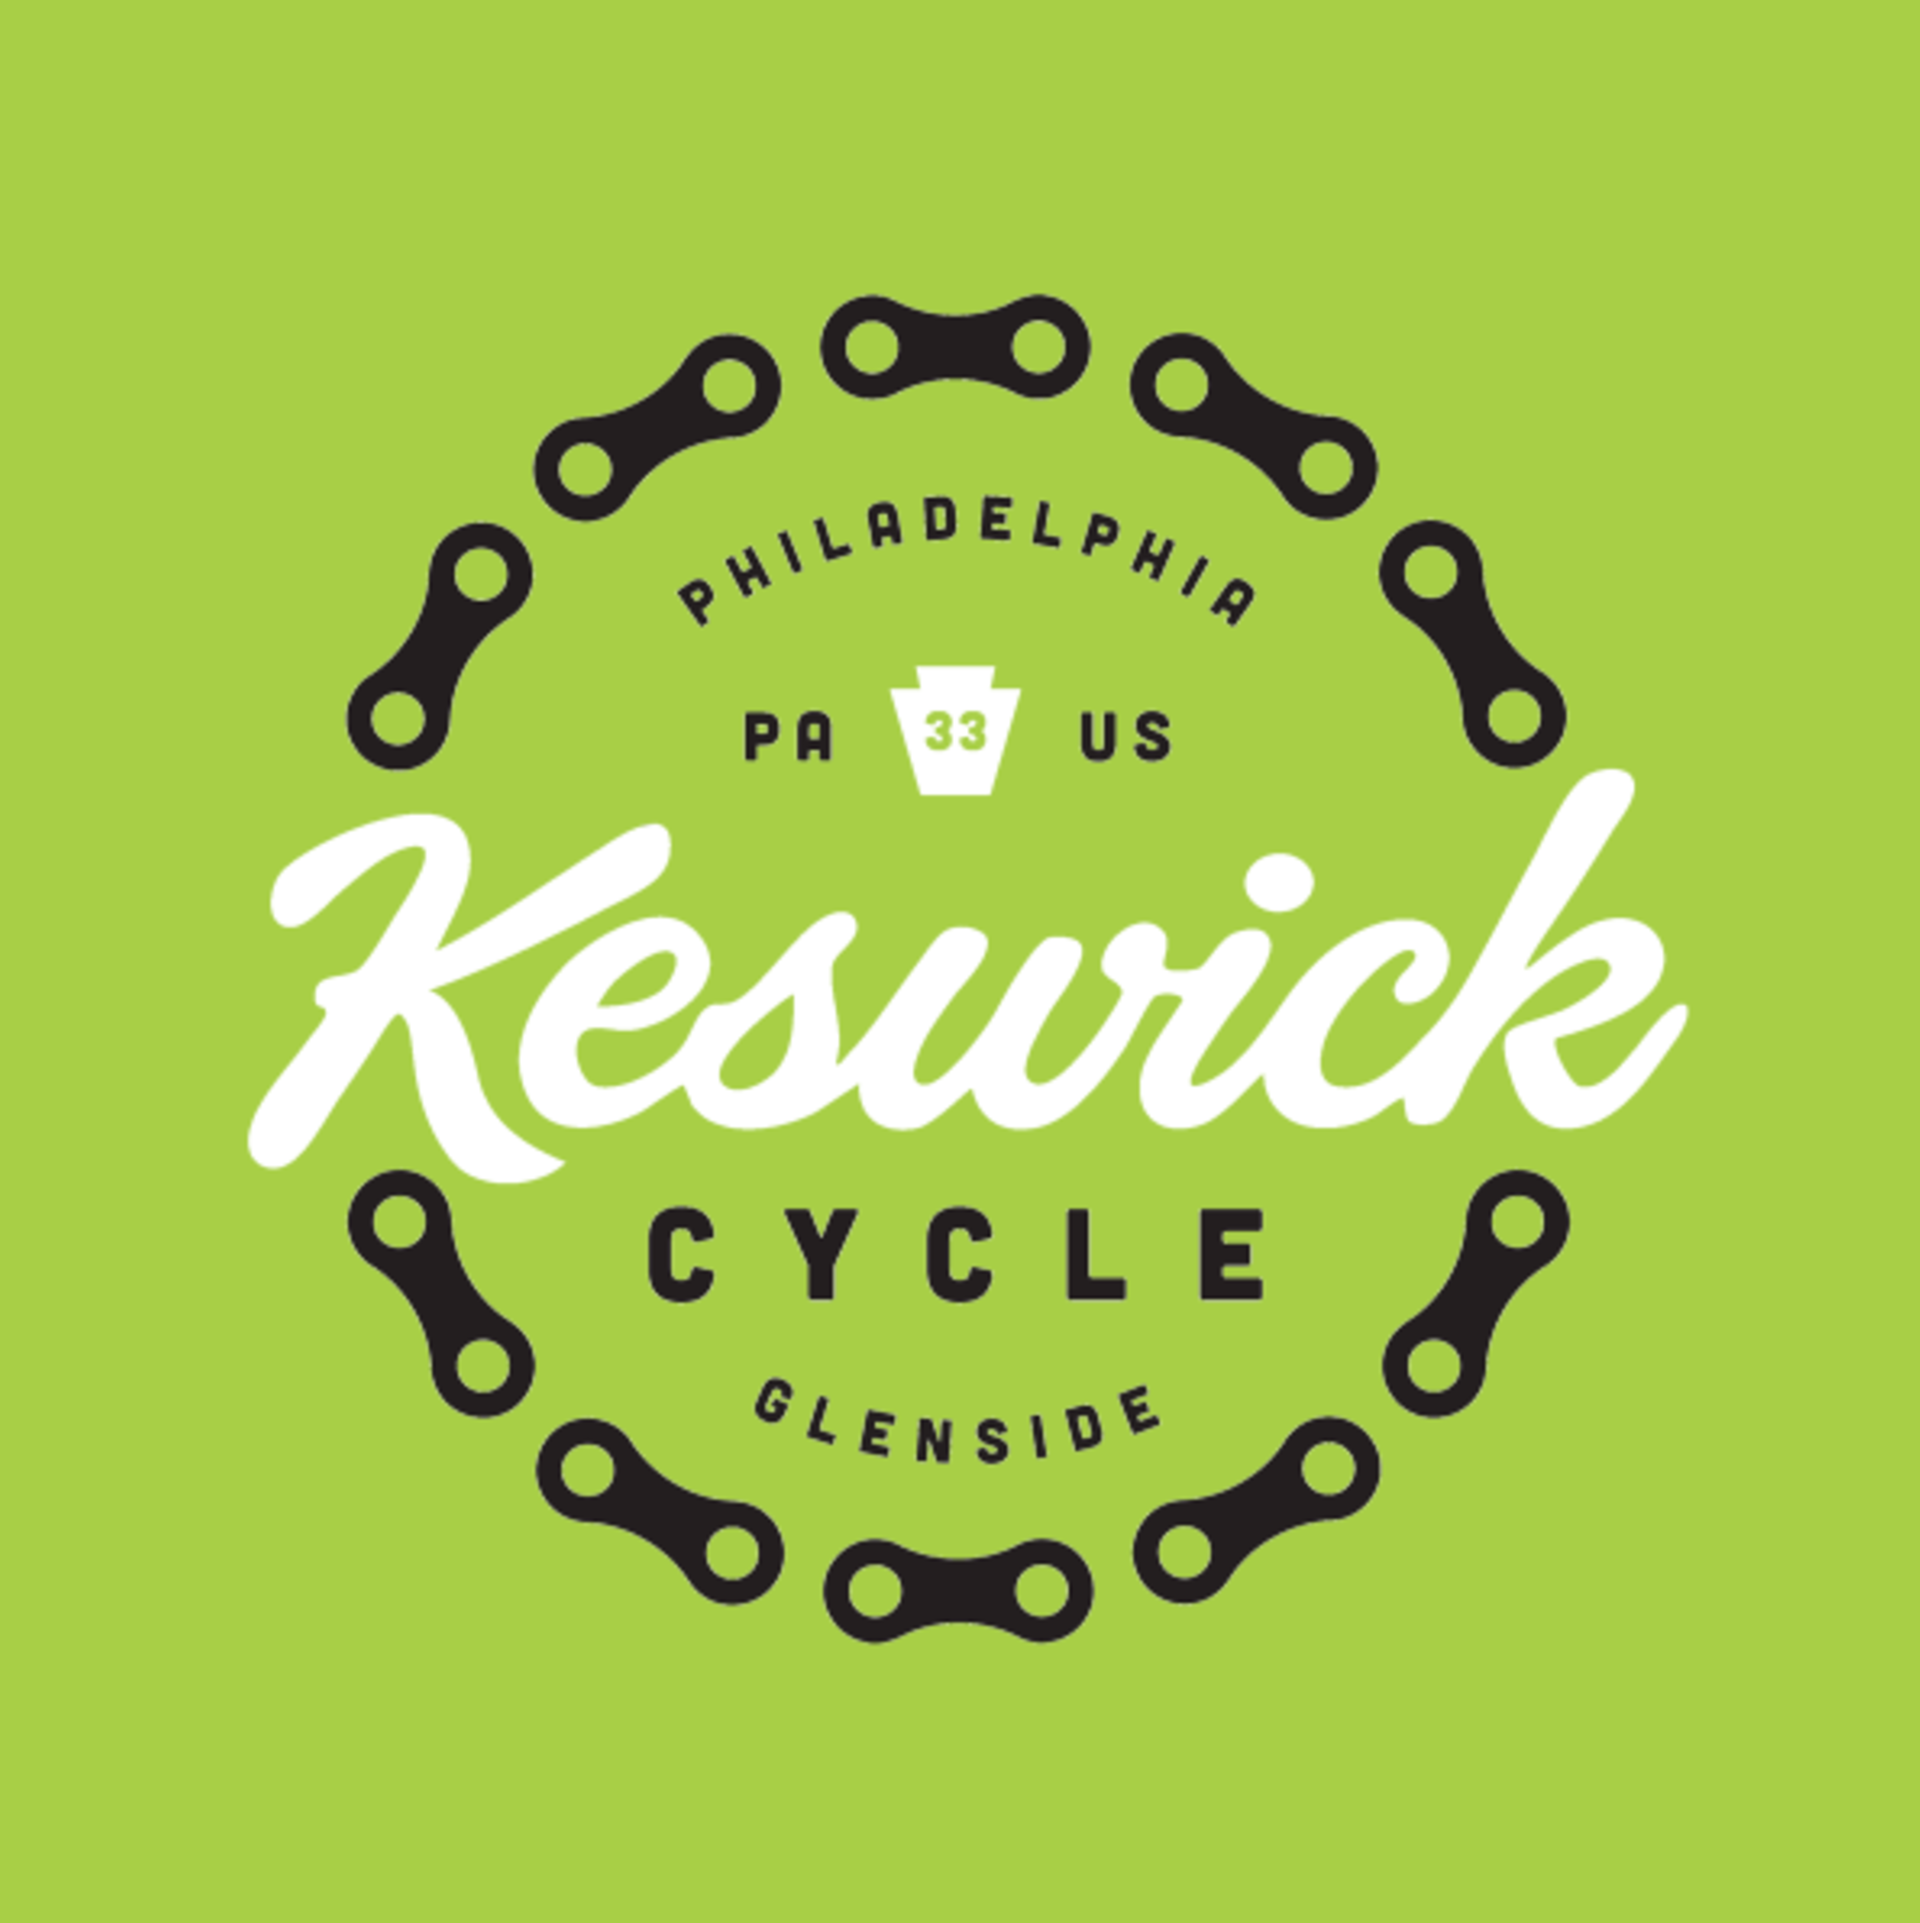 Keswick Cycle Paoli